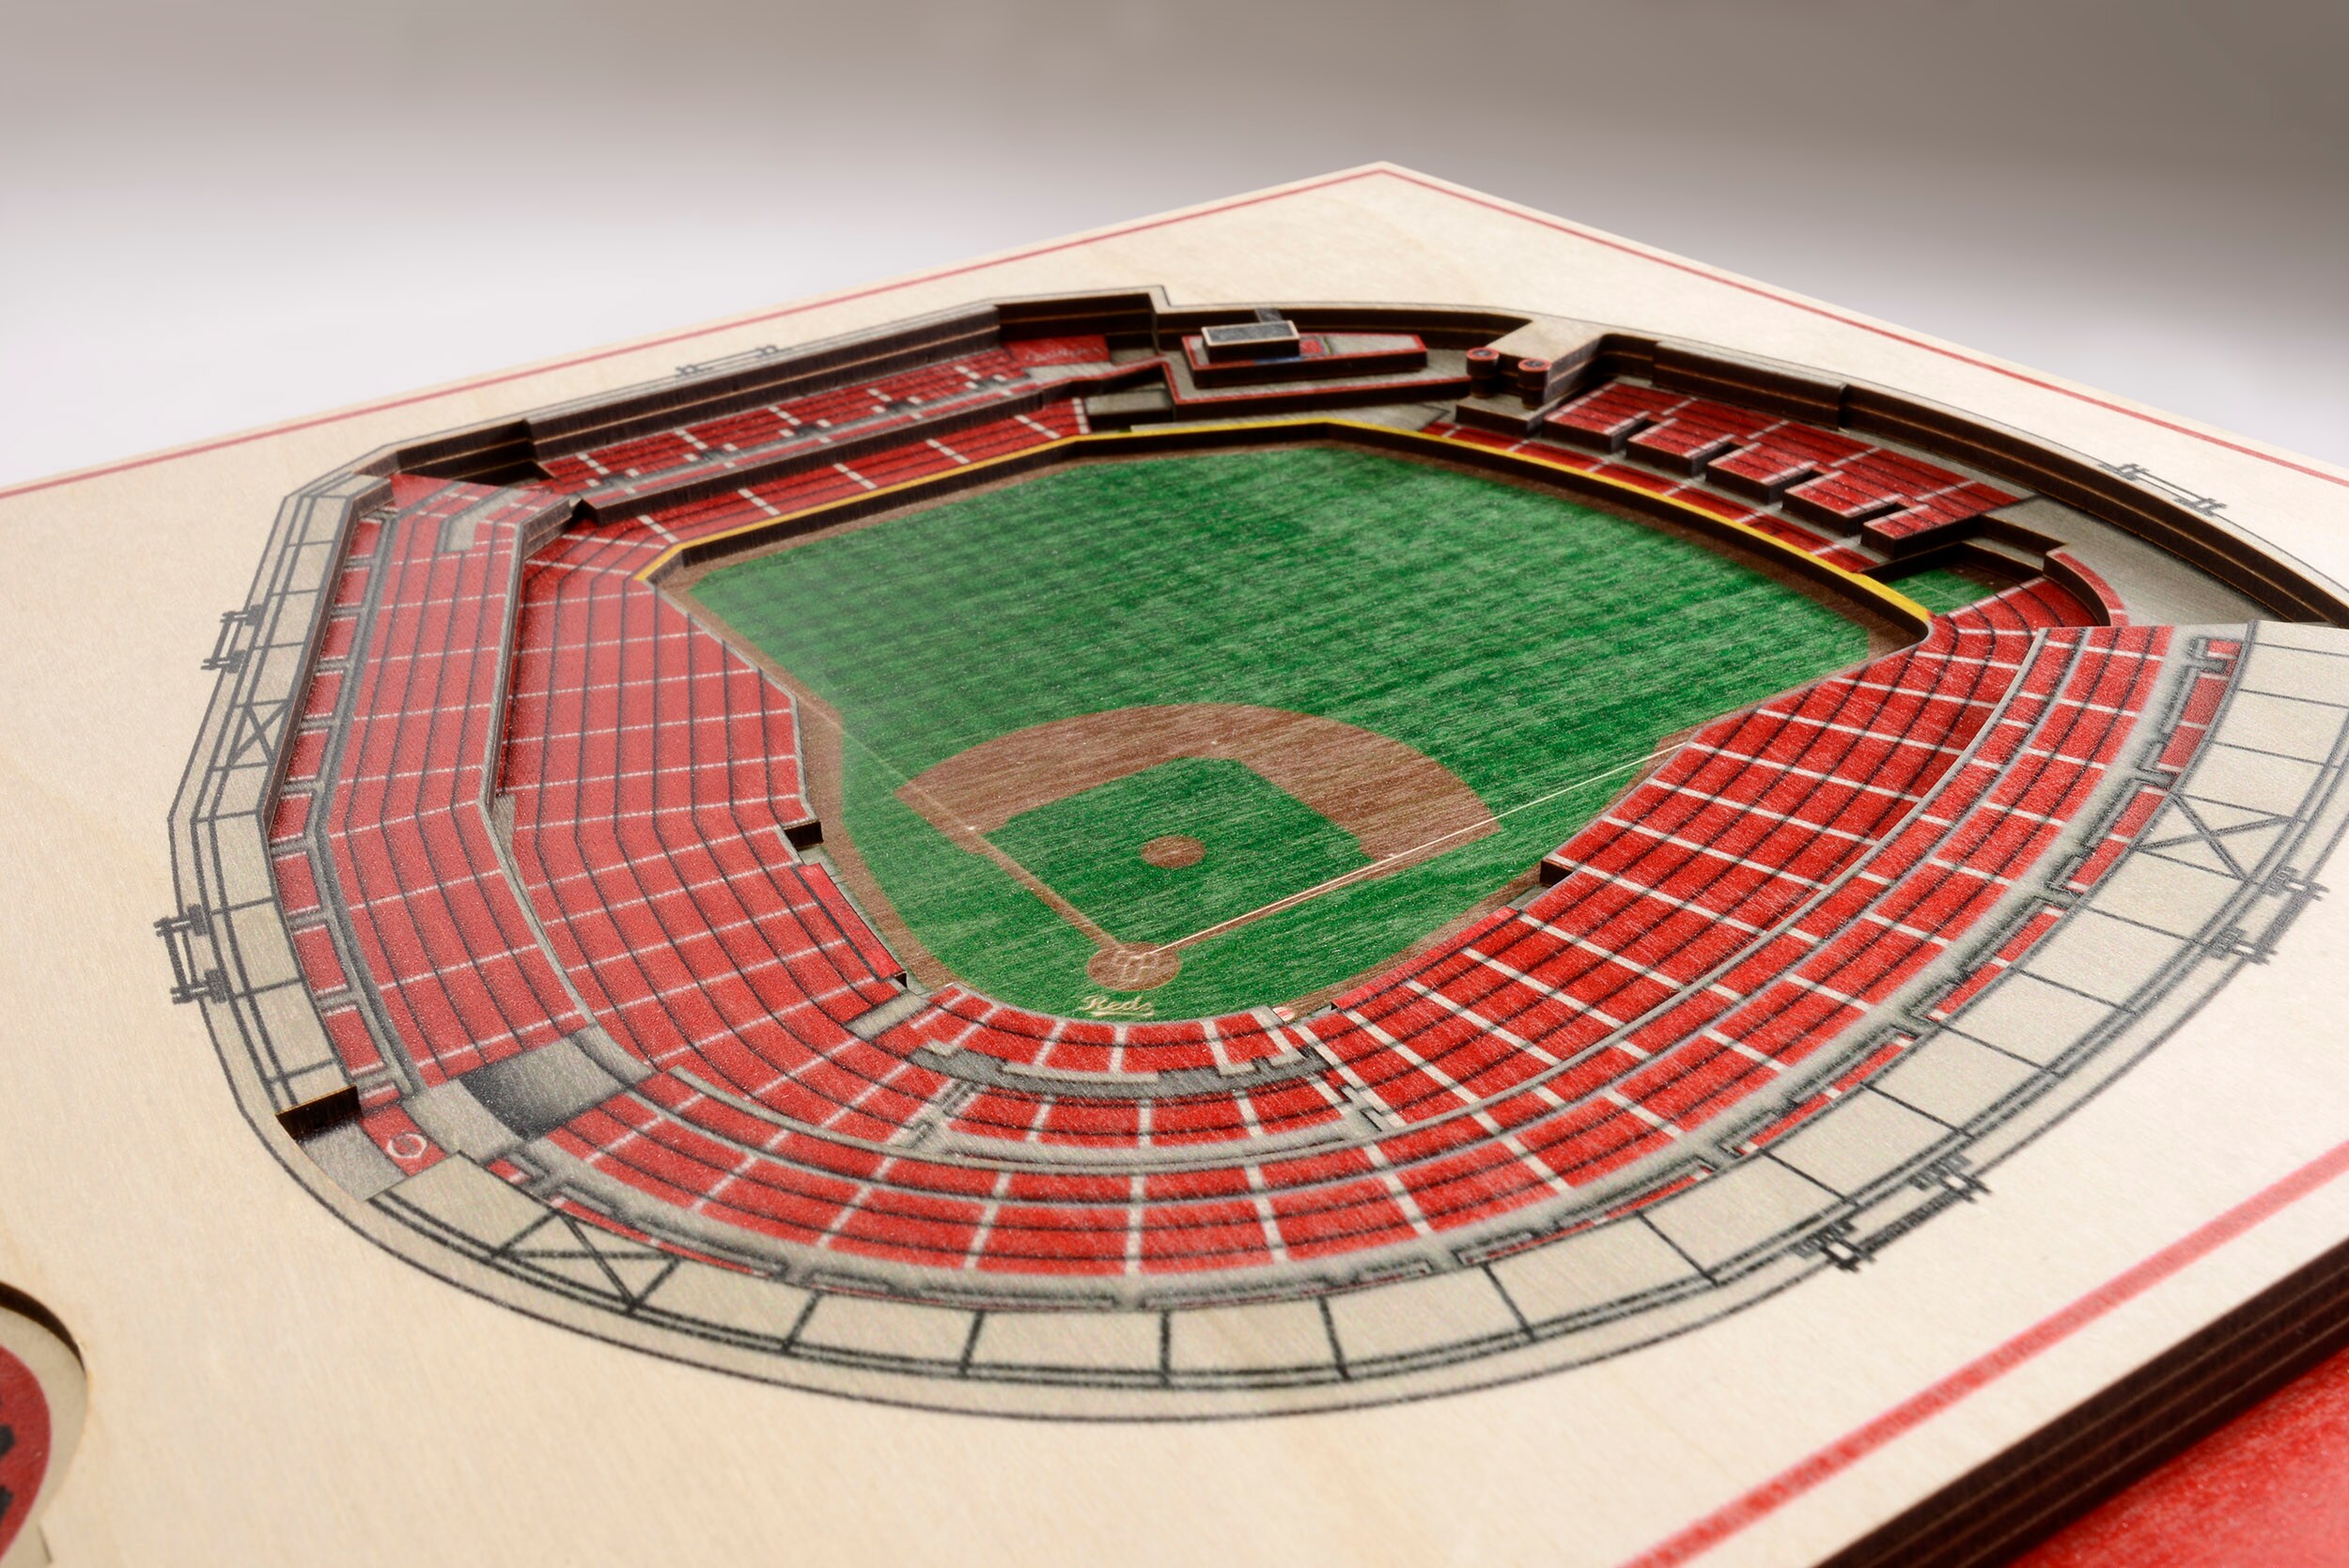 MLB St. Louis Cardinals StadiumViews 3-D Wall Art - Busch Stadium